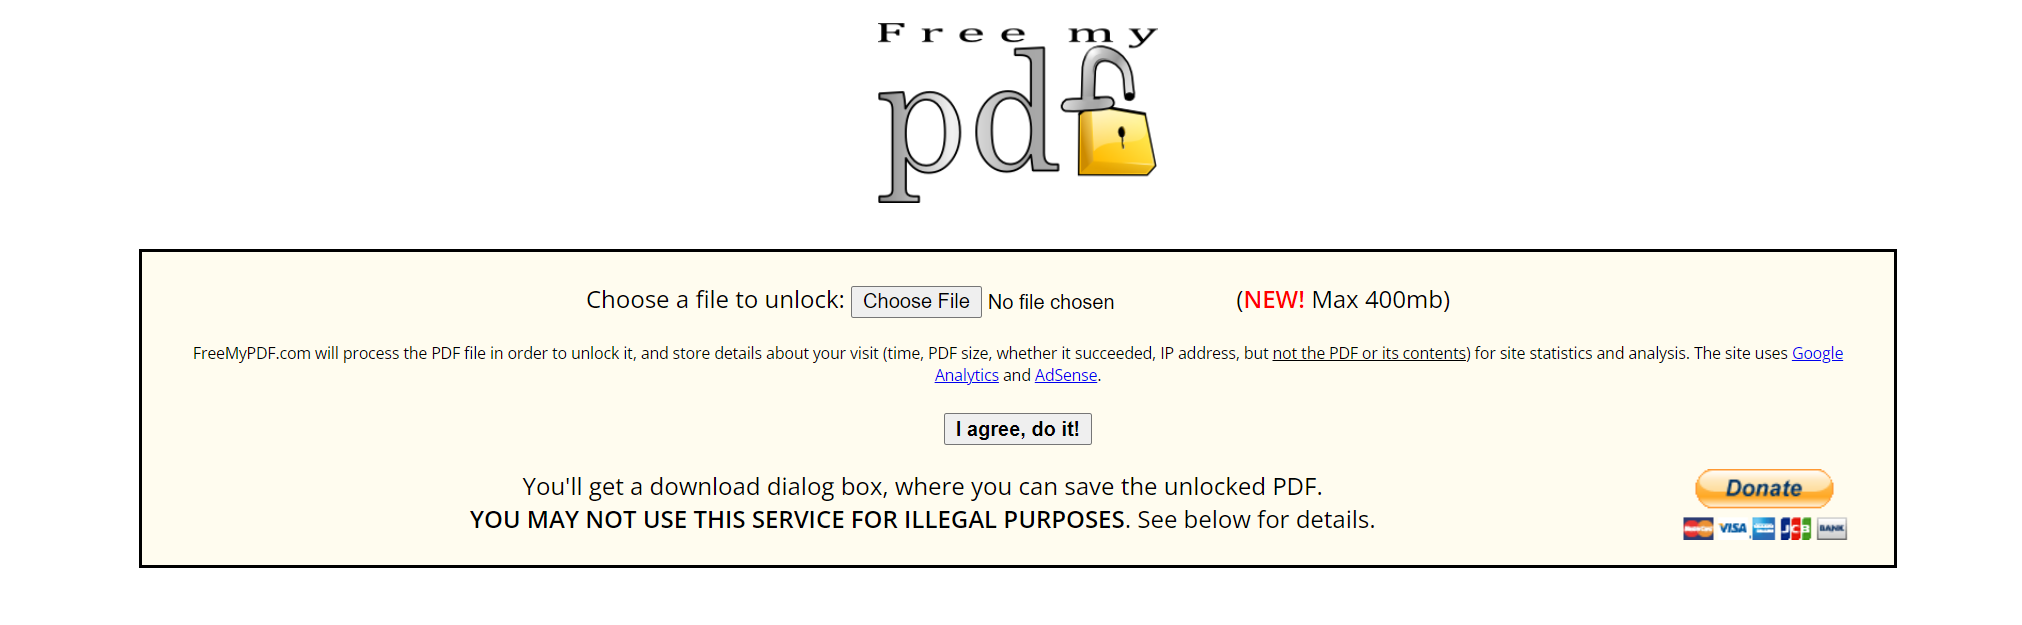 The FreeMyPDF.com homepage.